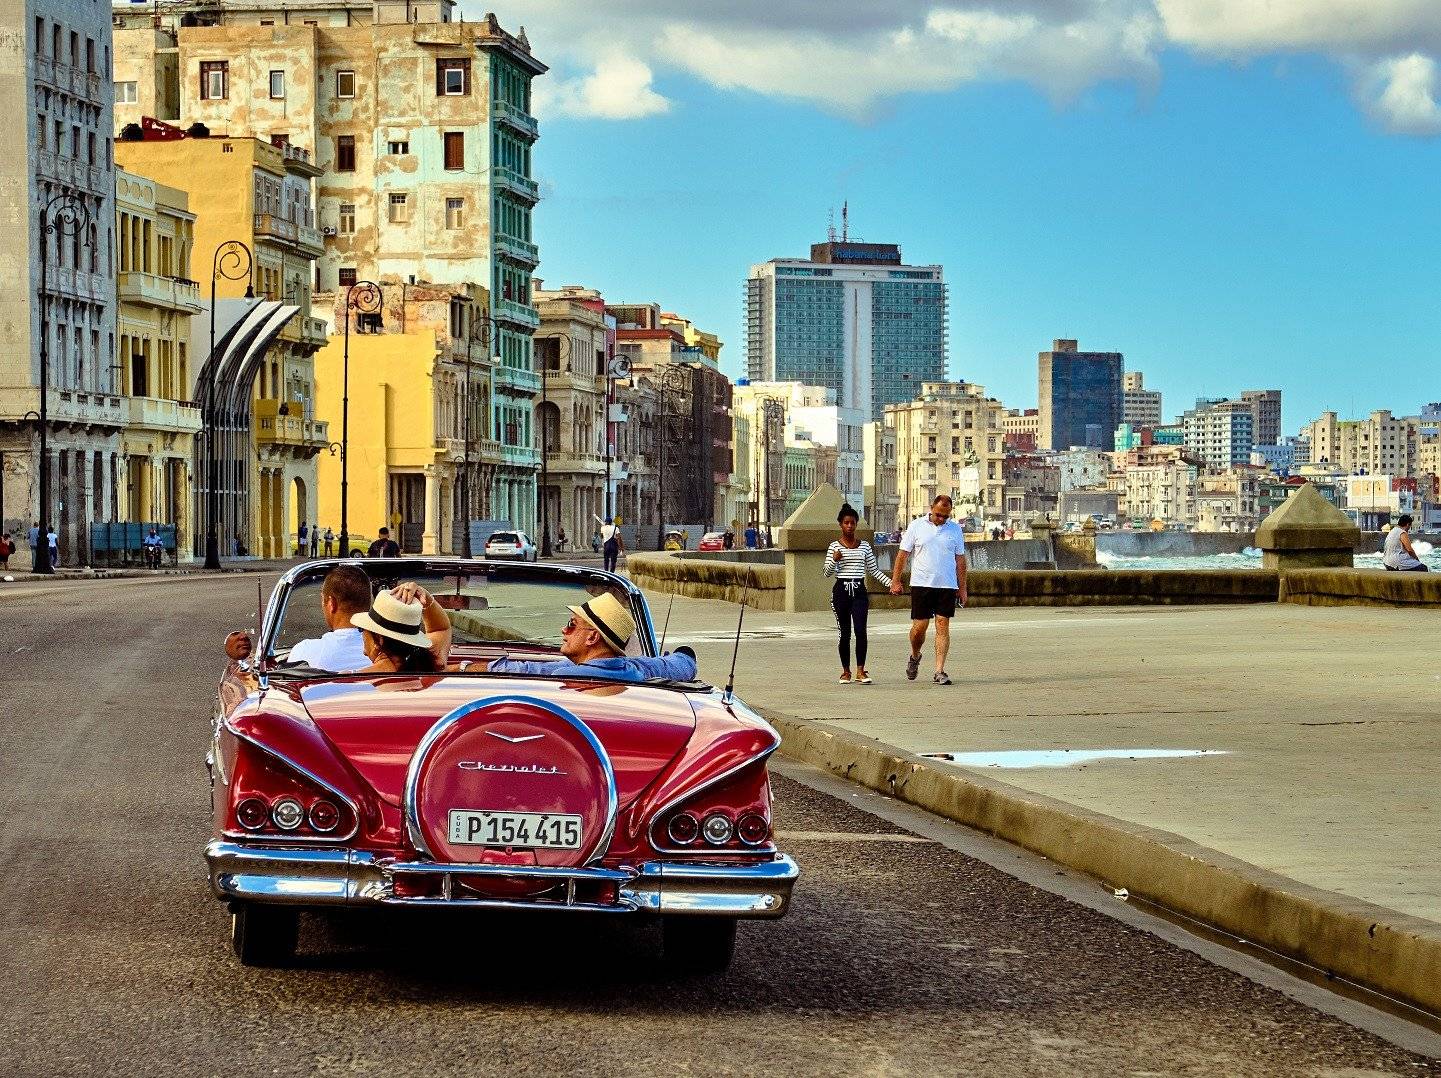 Das koloniale Havanna mit dem Flair der 50er Jahre